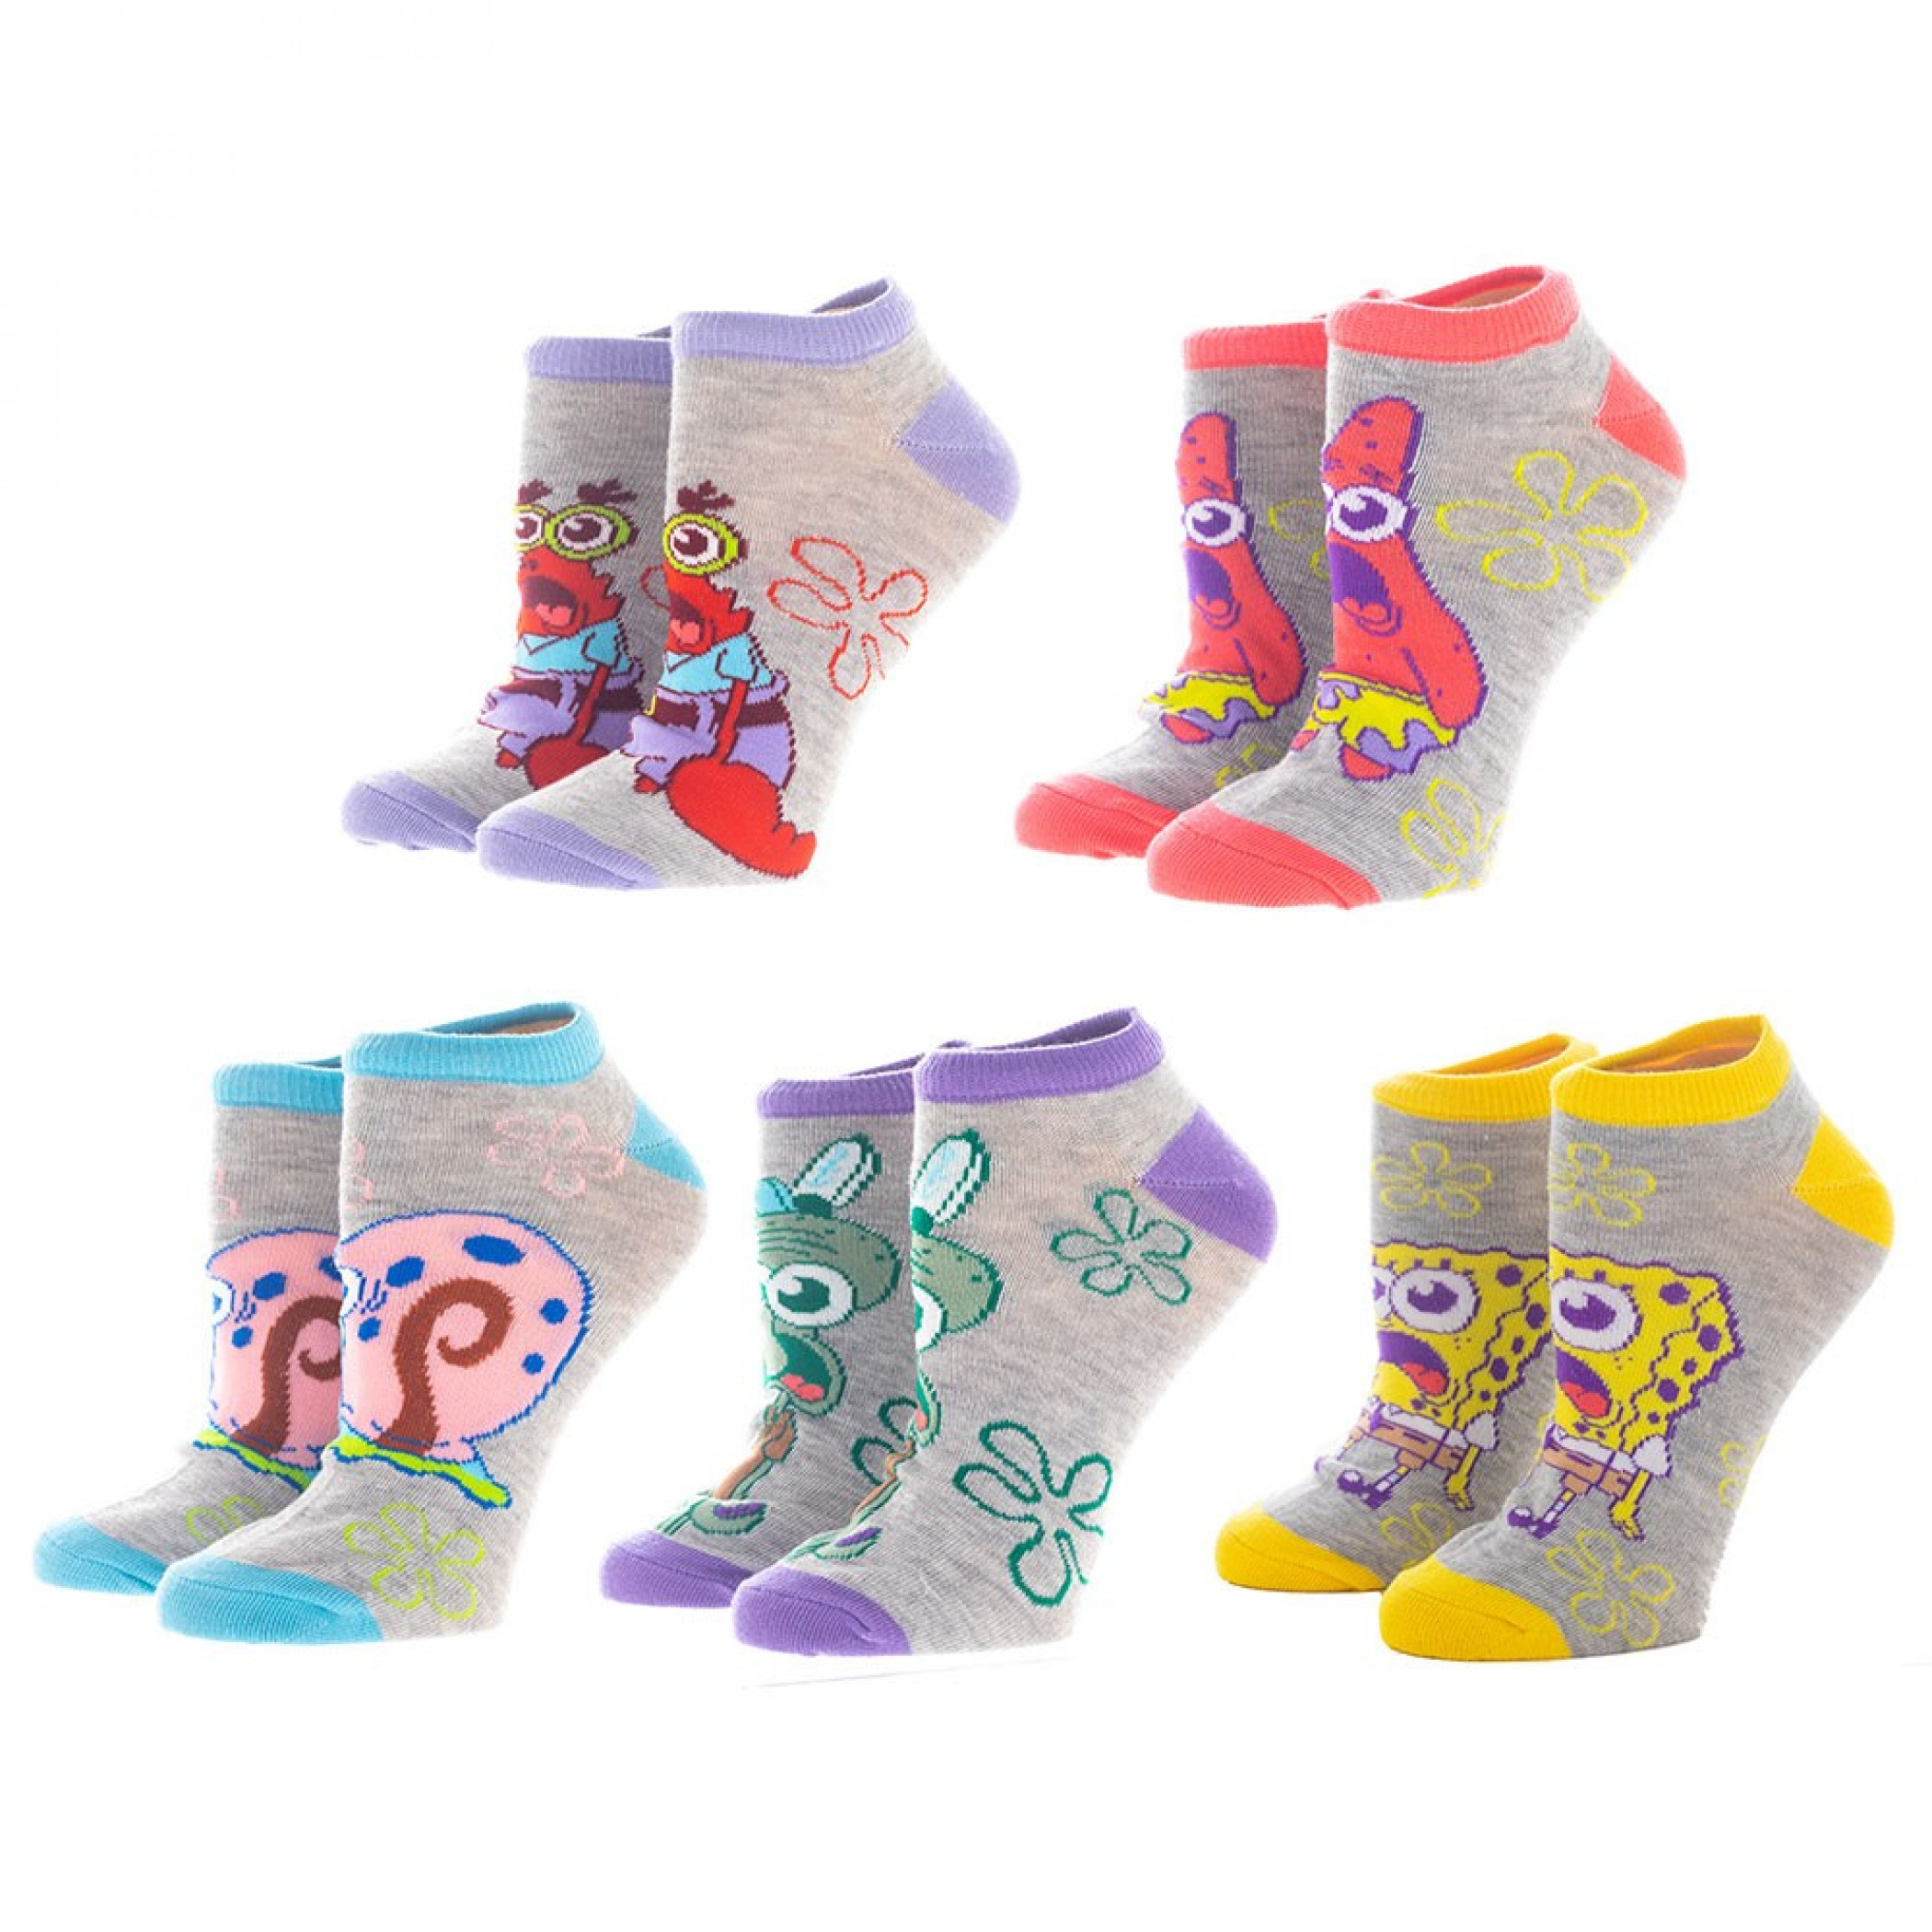 New OddSox Ladies SPONGEBOB SQUAREPANTS 5 Pair Of Ankle Socks SANDY KRABS MR